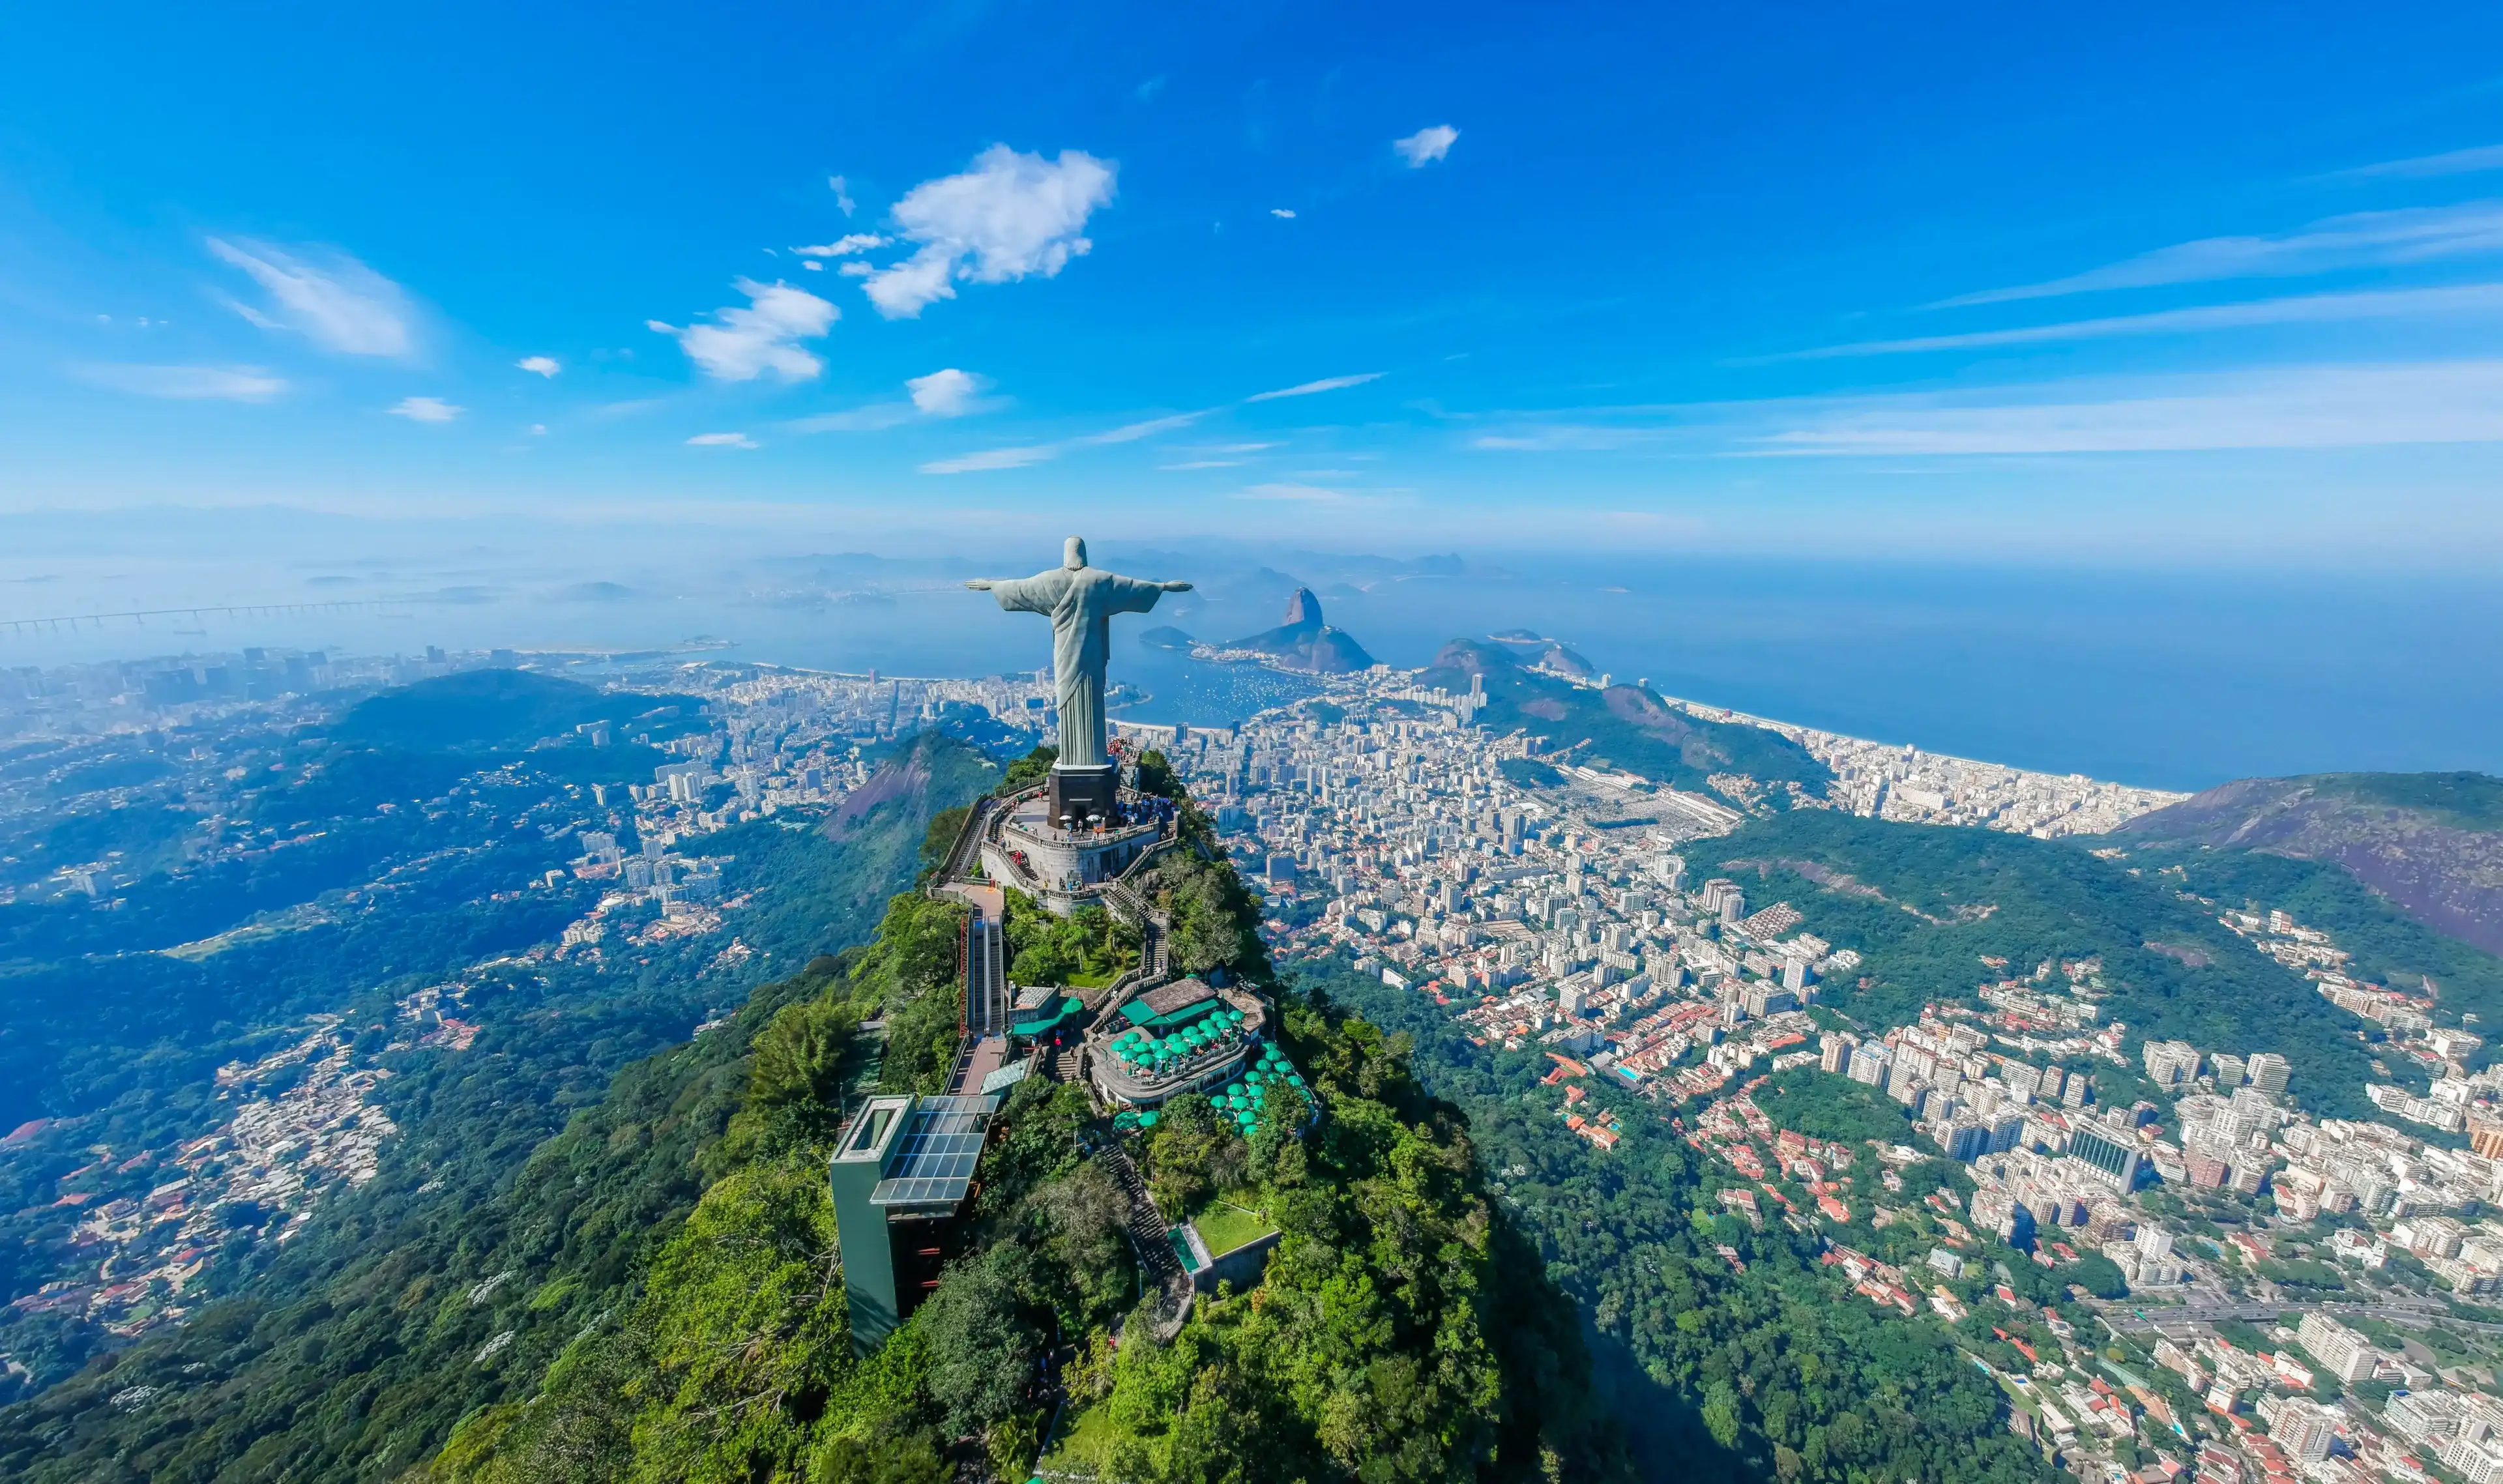 Brazil hotels. Best hotels in Brazil